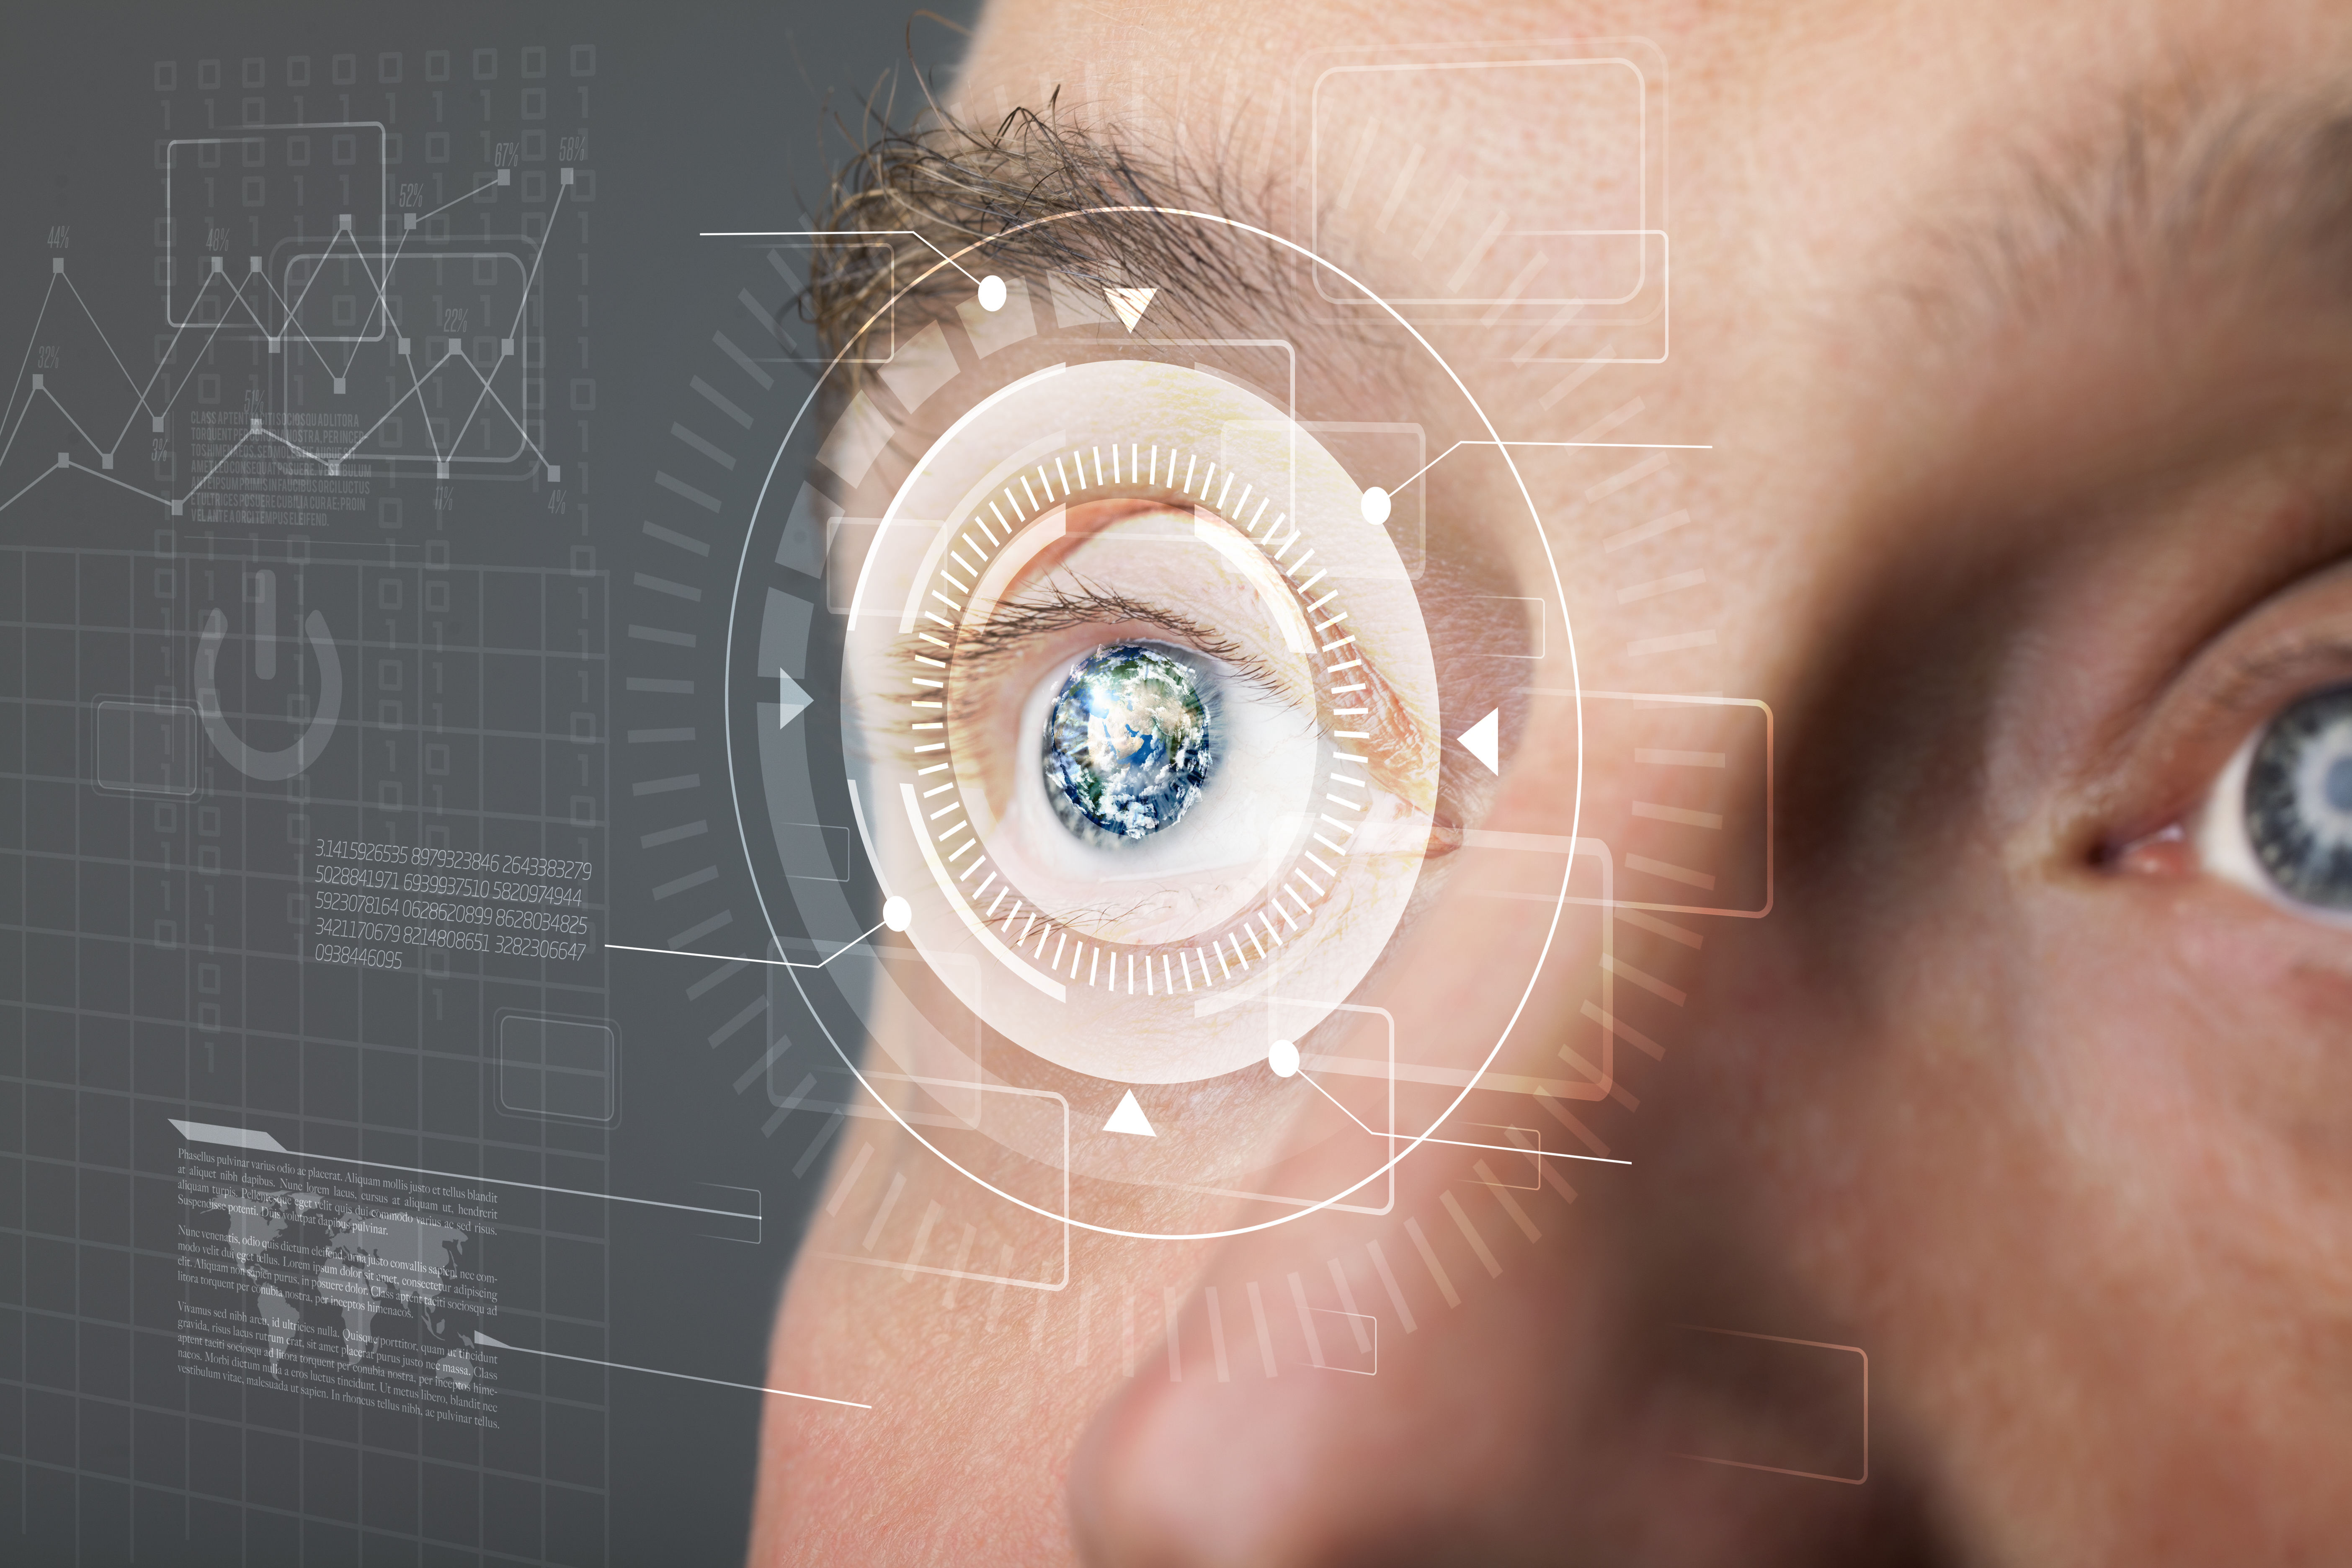 Глаз будущего 6. Технологии будущего. Биометрия глаза. Технологичный глаз. Будущее человека.